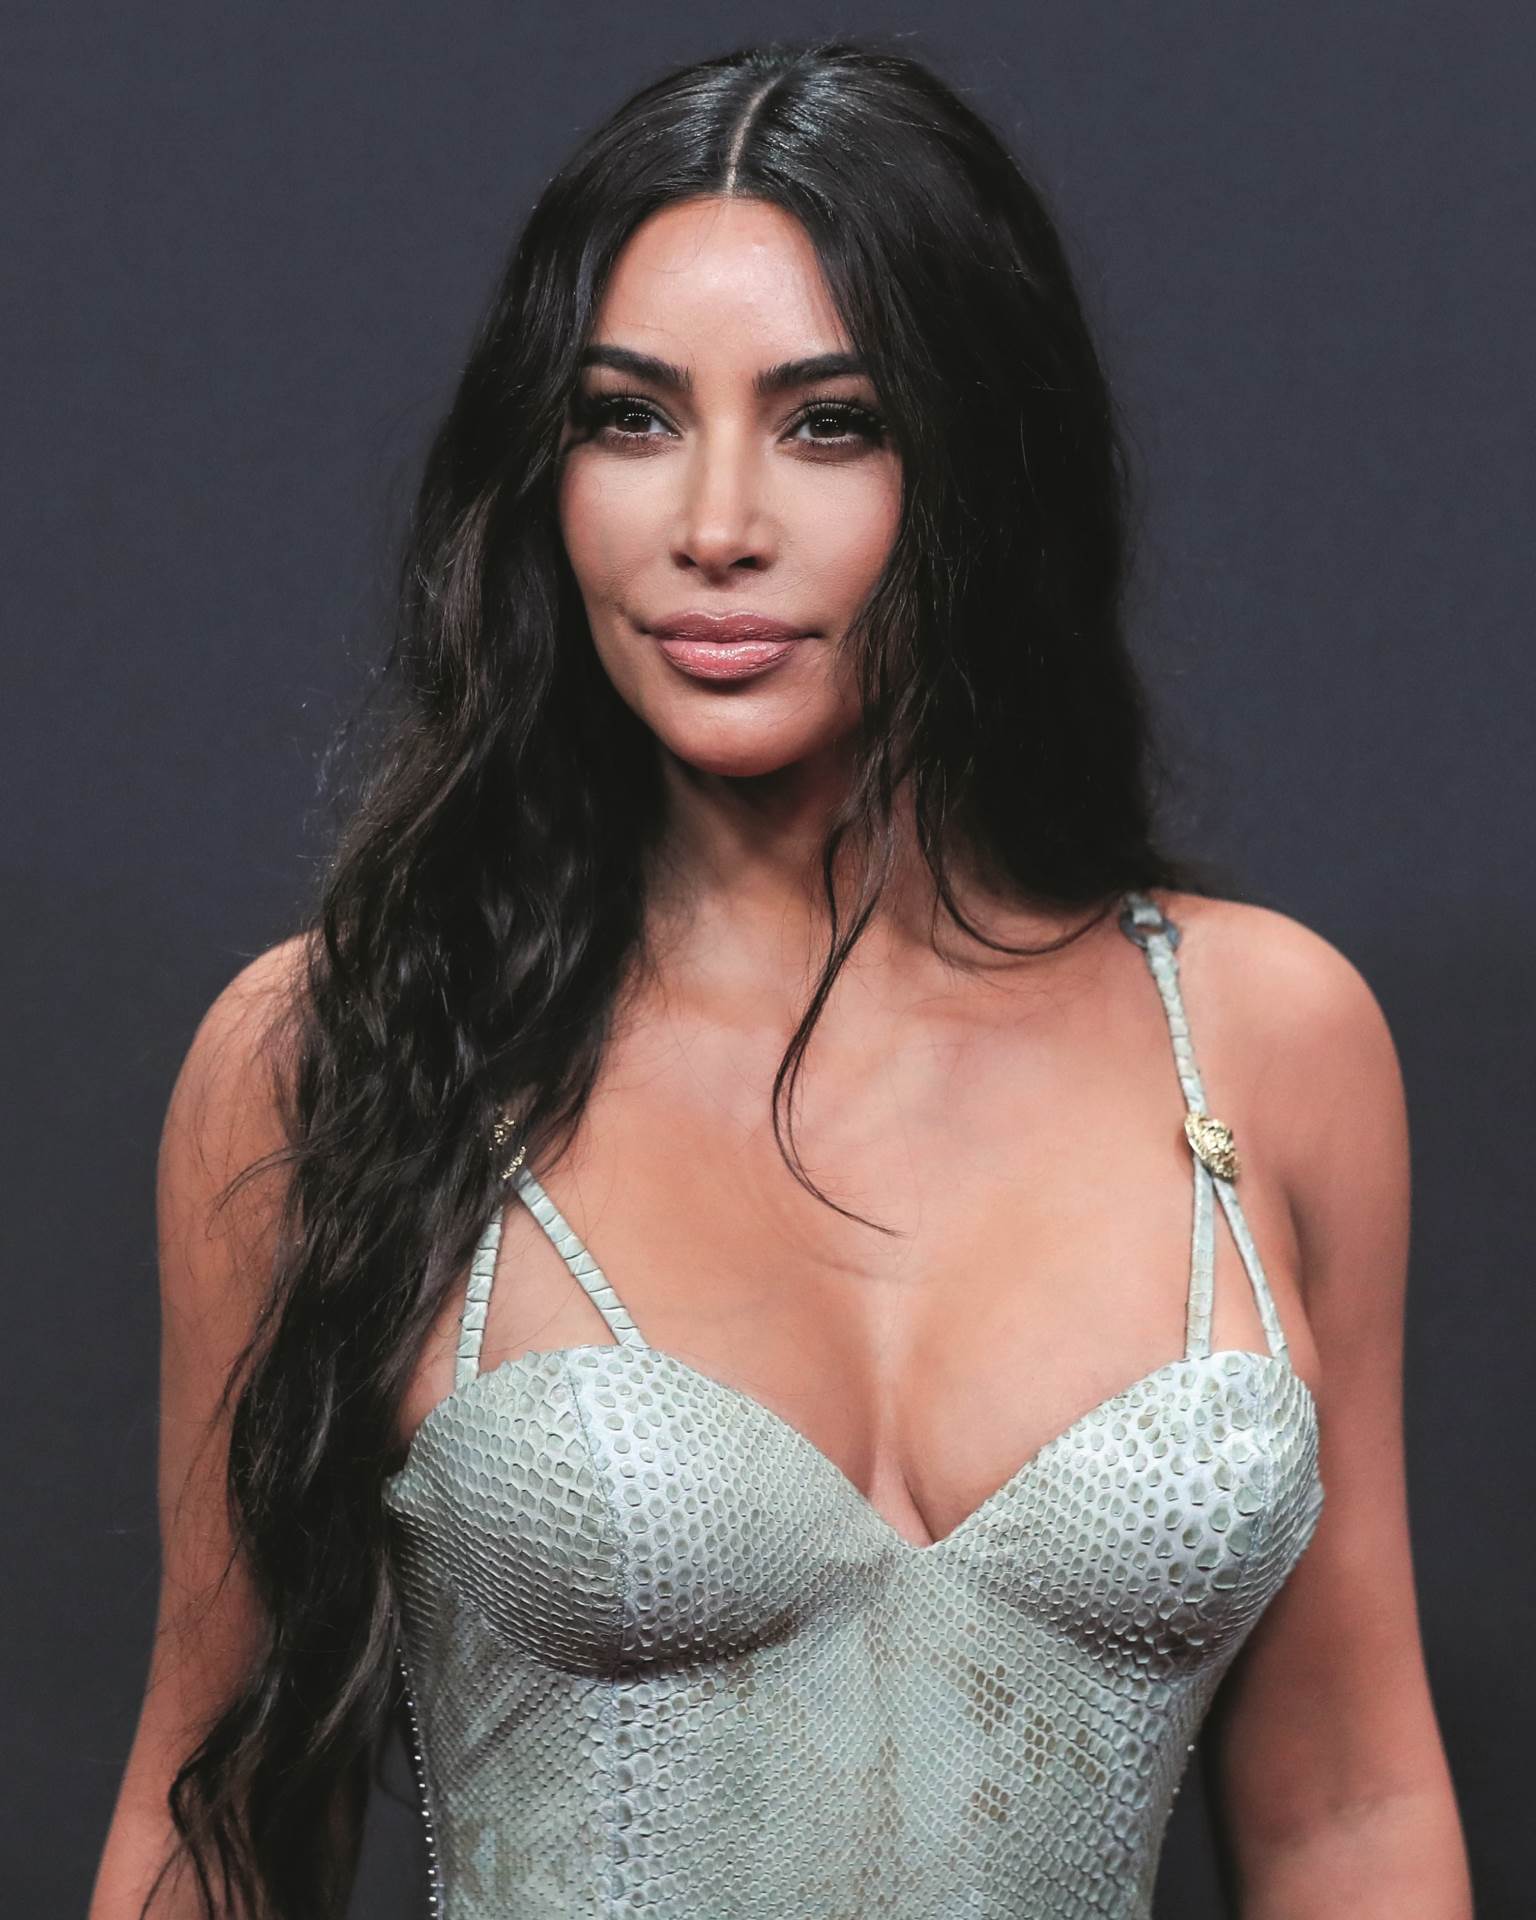 ŽIVOT REALITY ZVIJEZDE Kako je Kim Kardashian profitirala na svojoj intimi